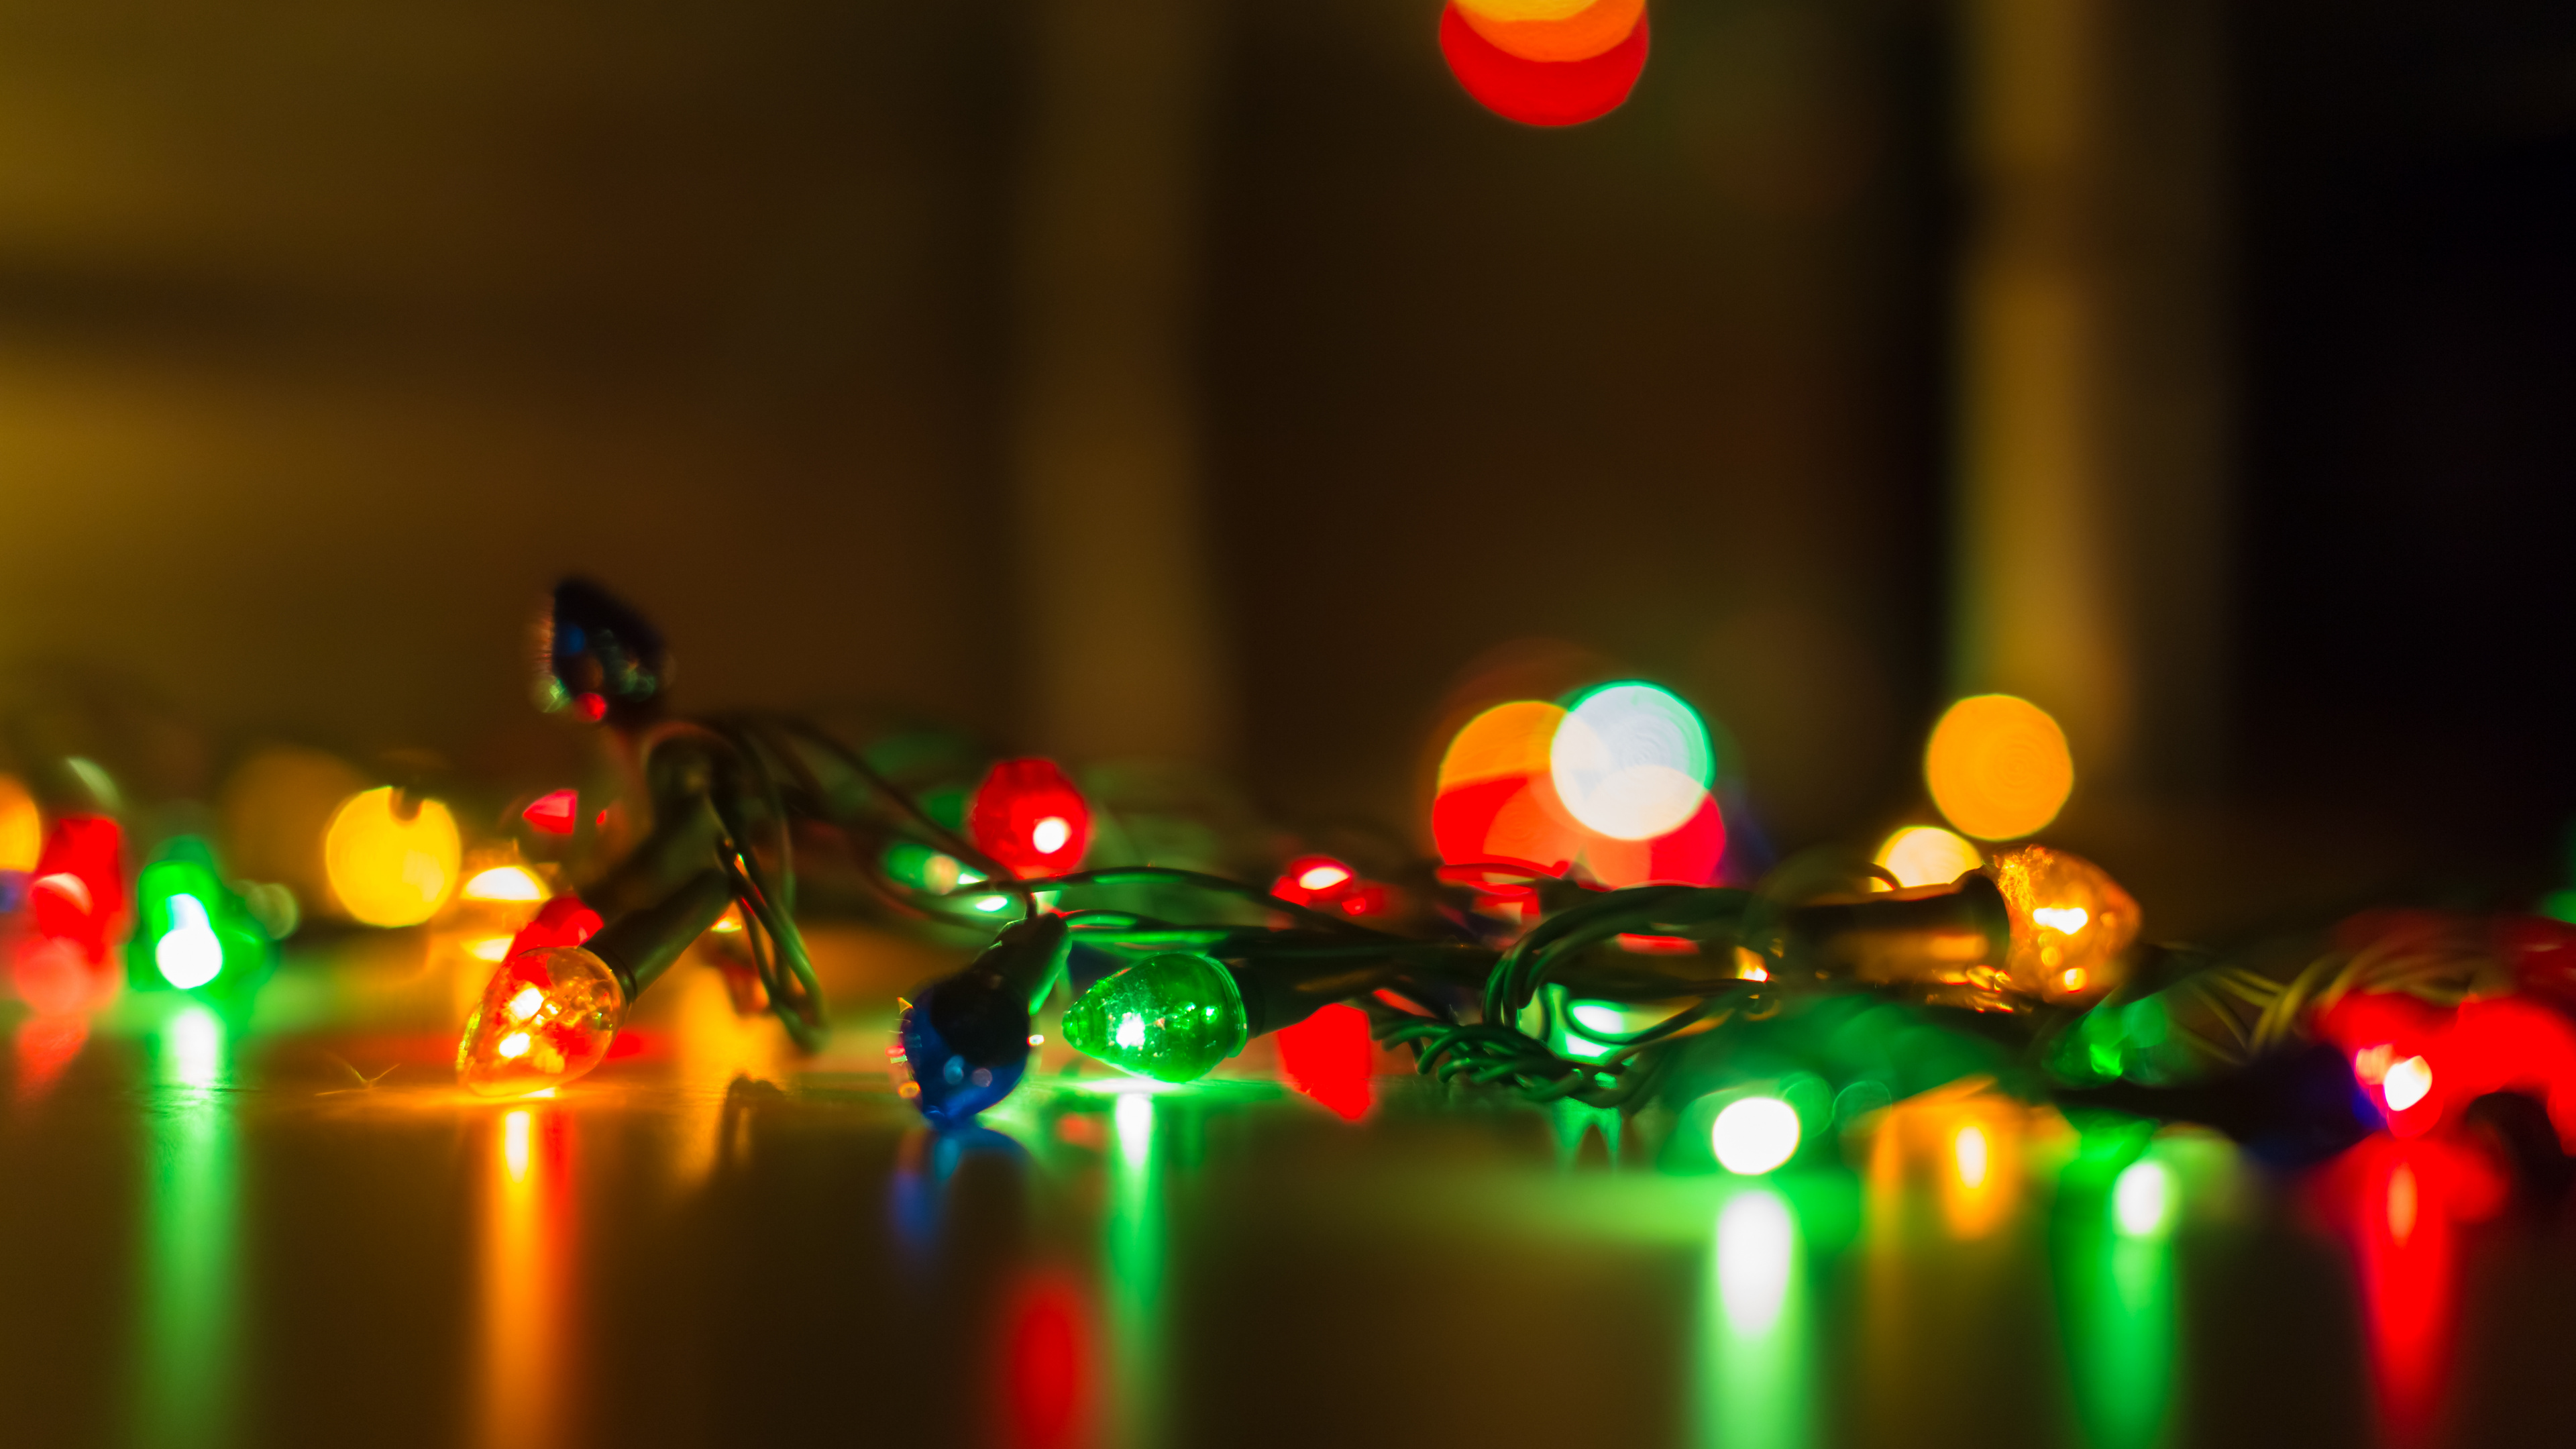 Weihnachtsbeleuchtung, Girlande, Weihnachten, Licht, Gelb. Wallpaper in 3840x2160 Resolution